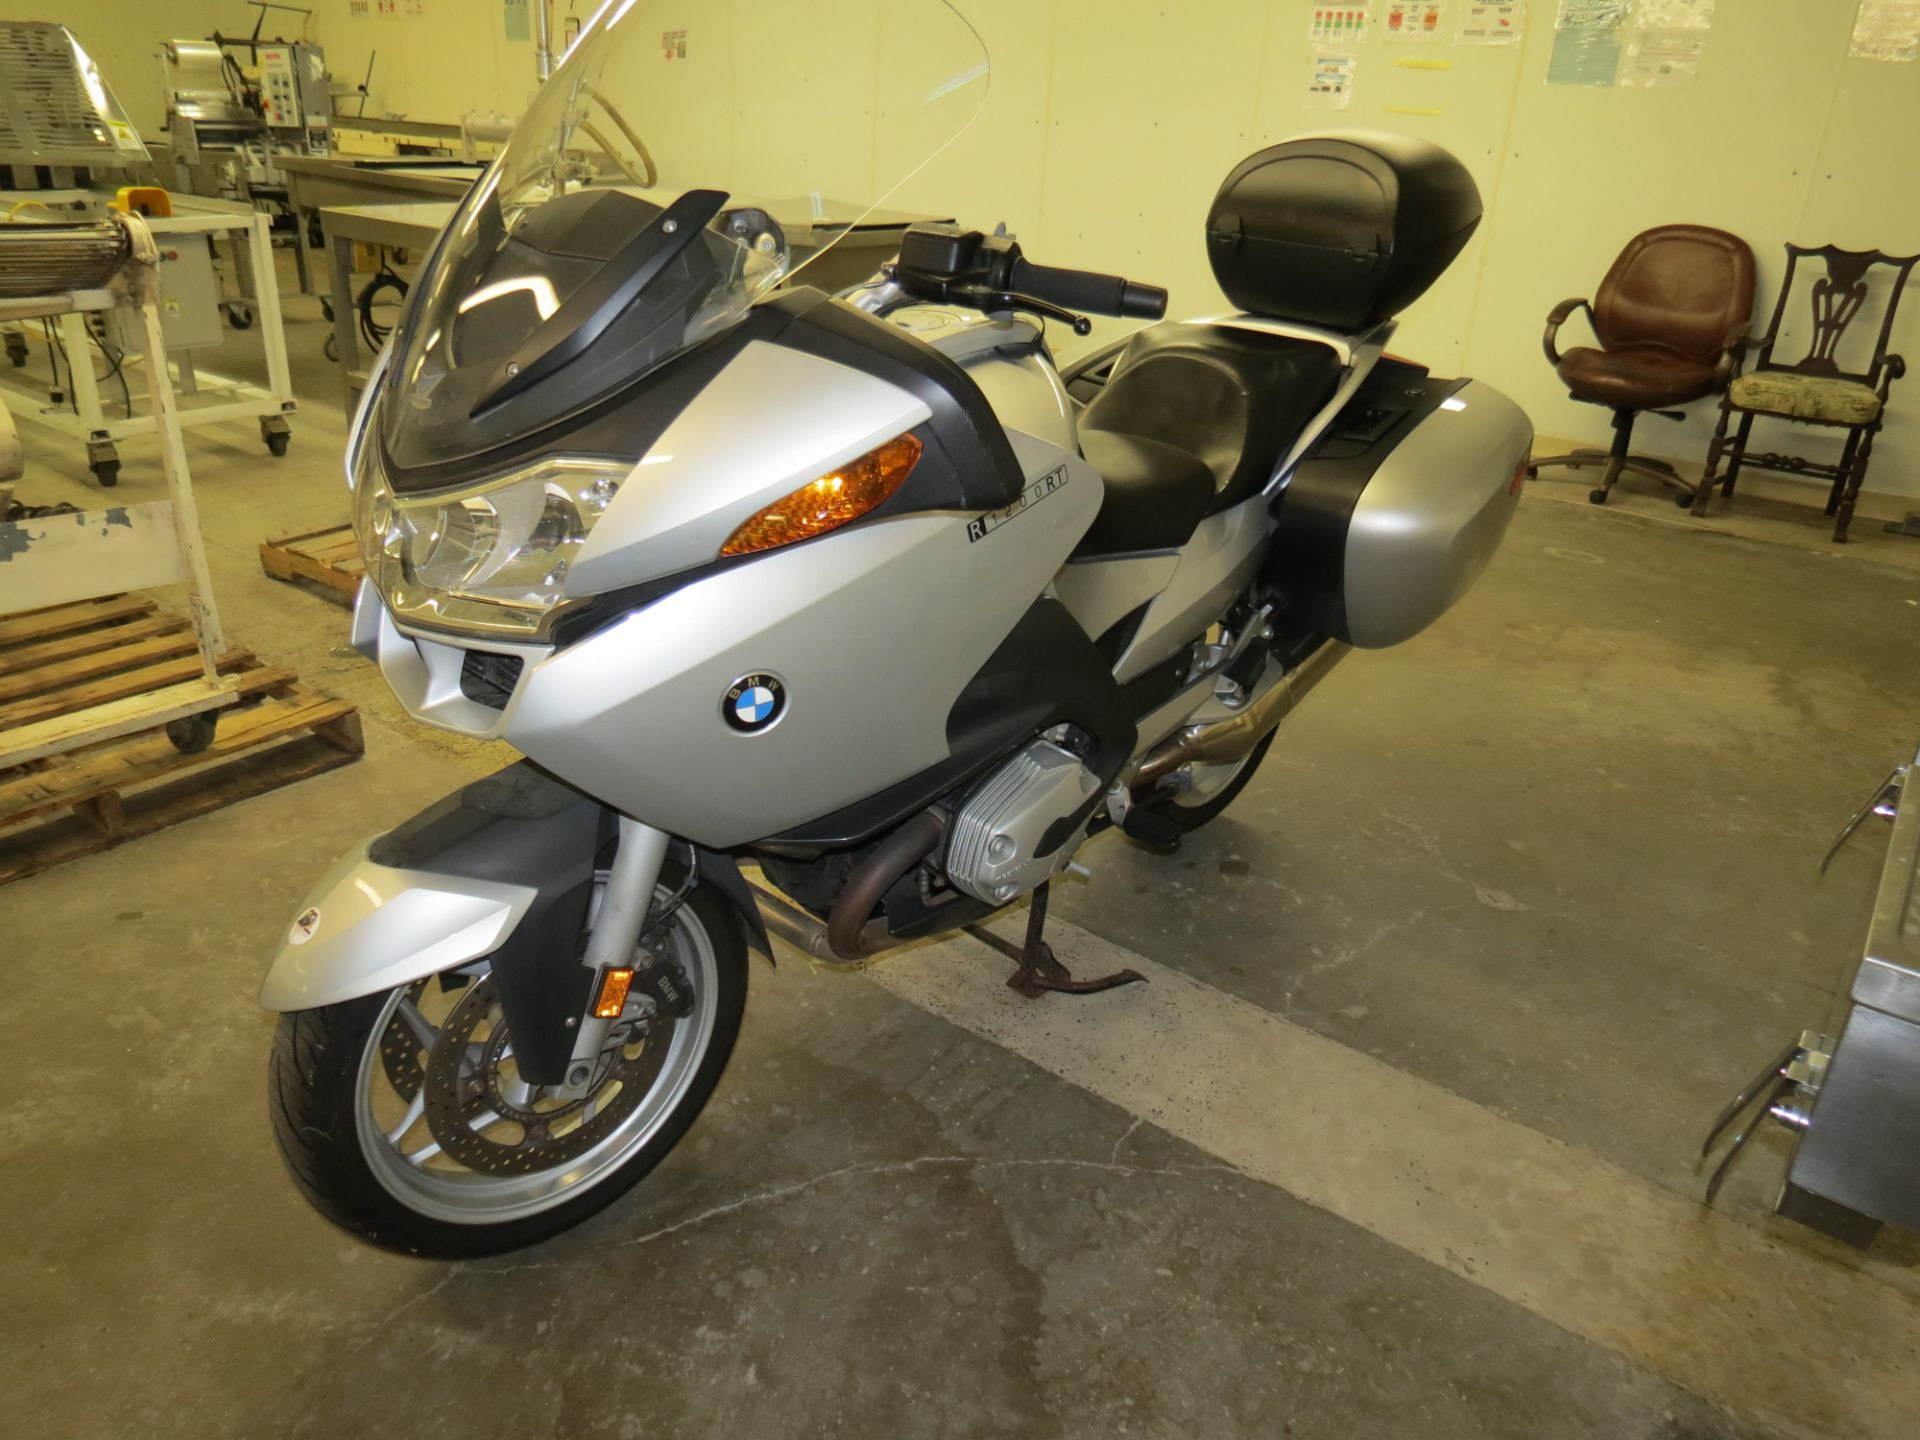 2007 BMW R1200RT MOTORCYCLE, MILEAGE 33,133, VIN: W810388007ZT10162, LIC: 18E3032.